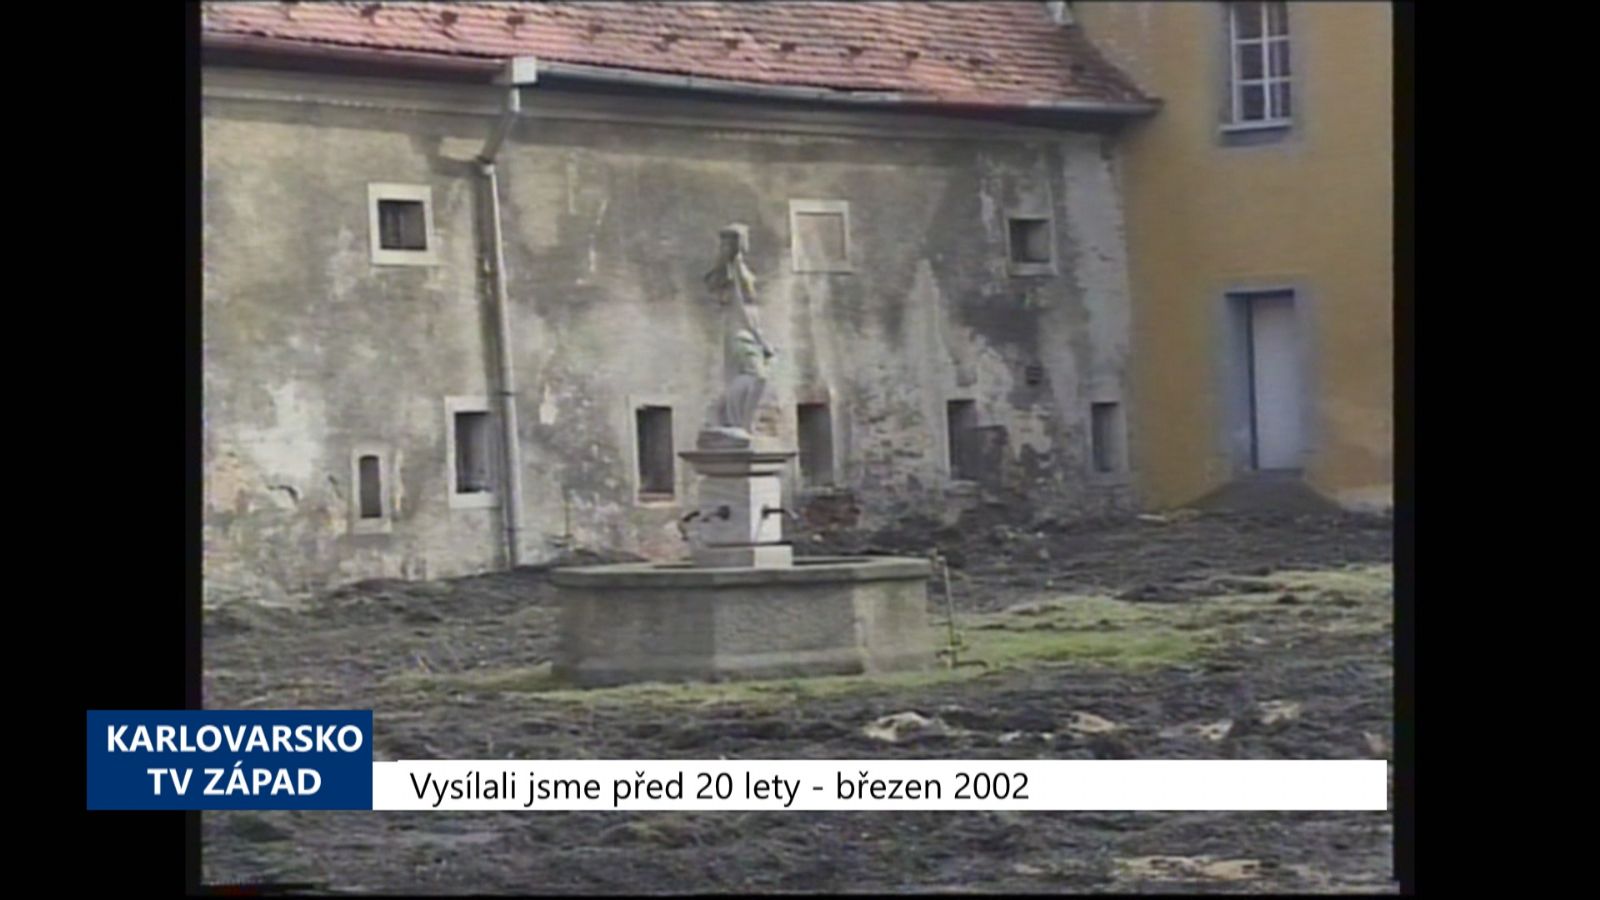 2002 – Cheb: Do údržby zeleně šlo loni 6 milionů korun (TV Západ)